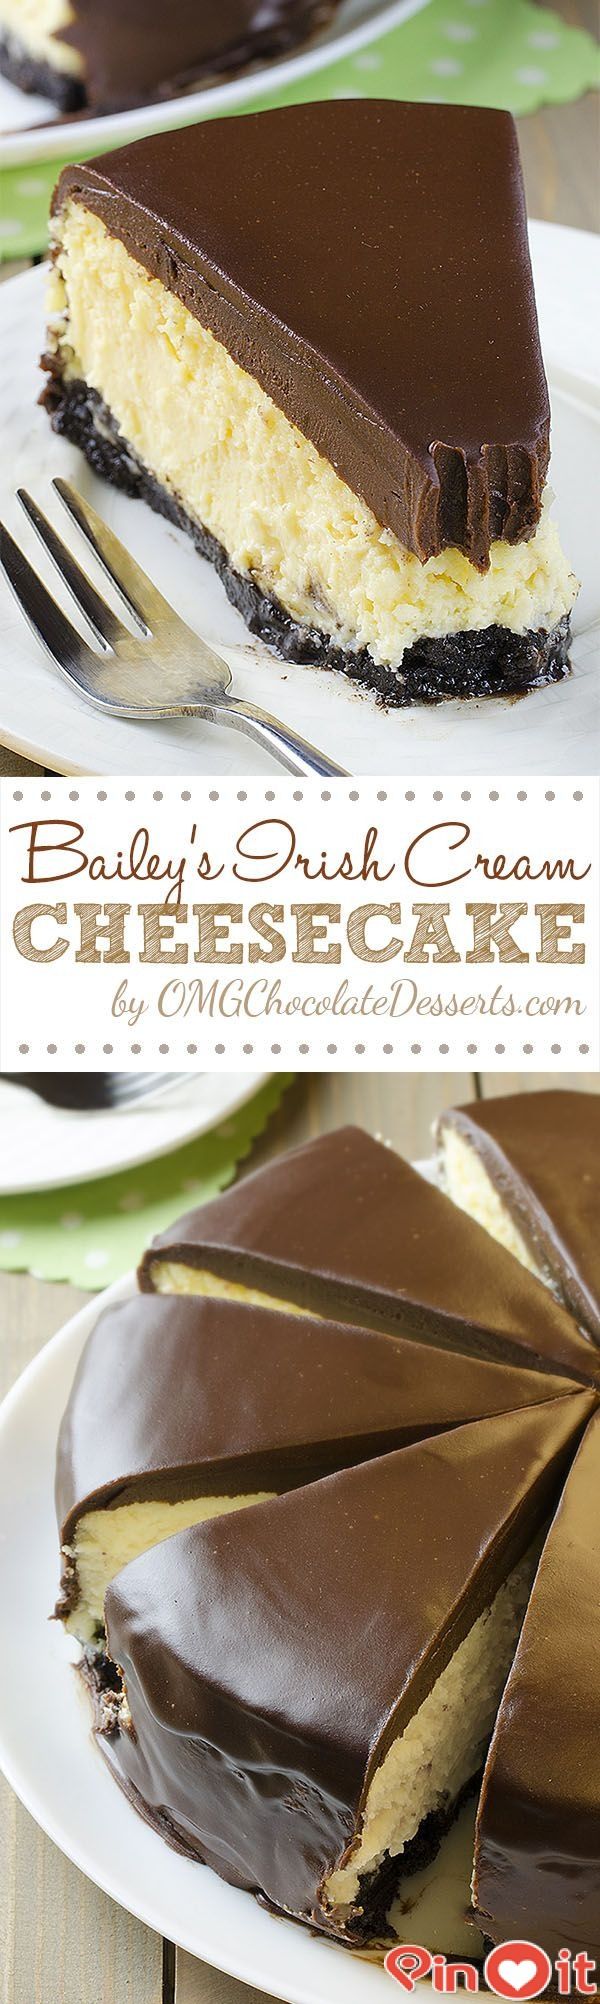 Bailey’s Irish Cream Cheesecake